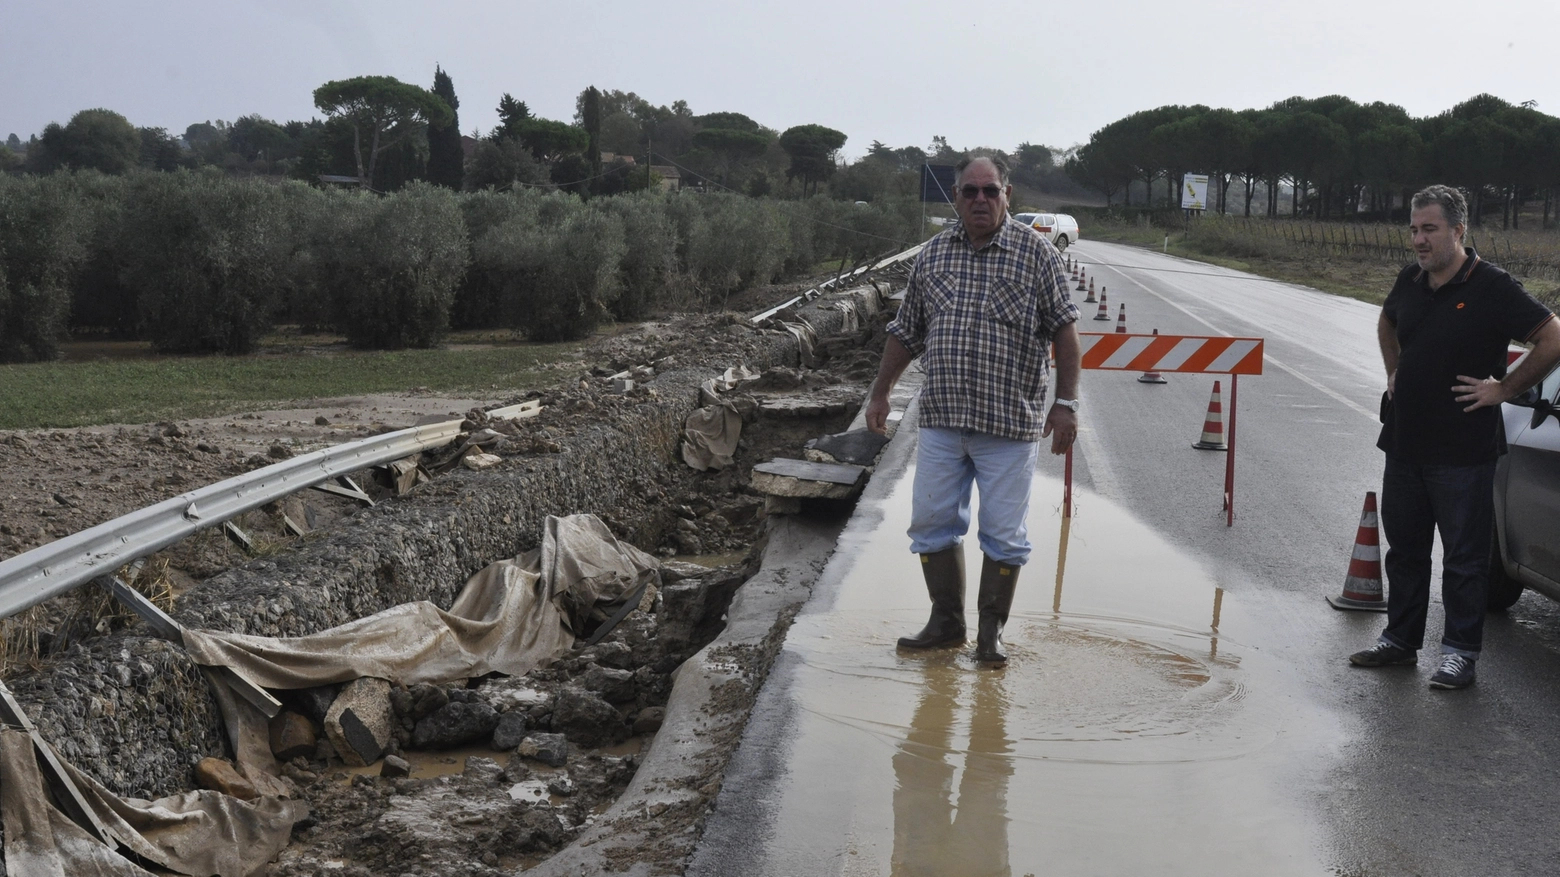 La devastazione dopo l'alluvione in Maremma (Aprili)